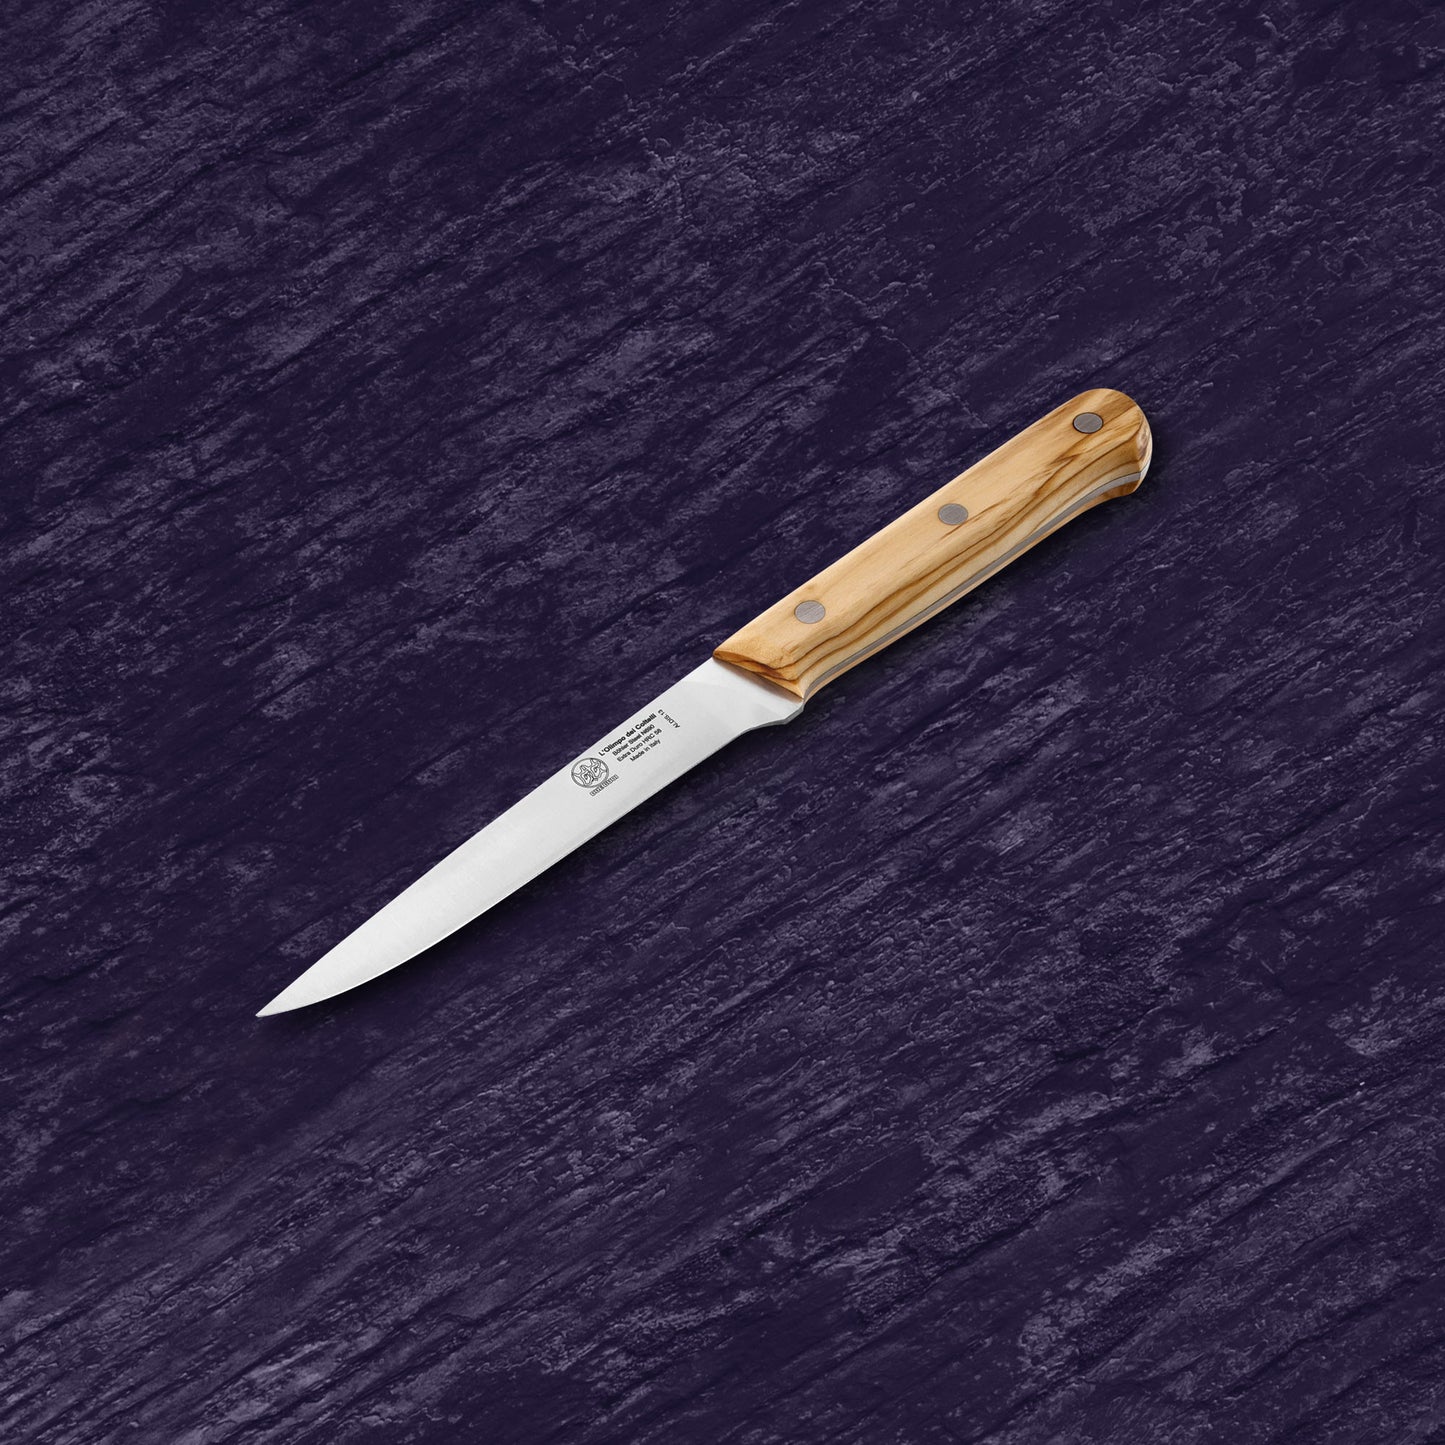 
                  
                    Boning Knife - Blade 5.12” - N690 Stainless Steel - Hrc 58 - Olive Wood Handle
                  
                